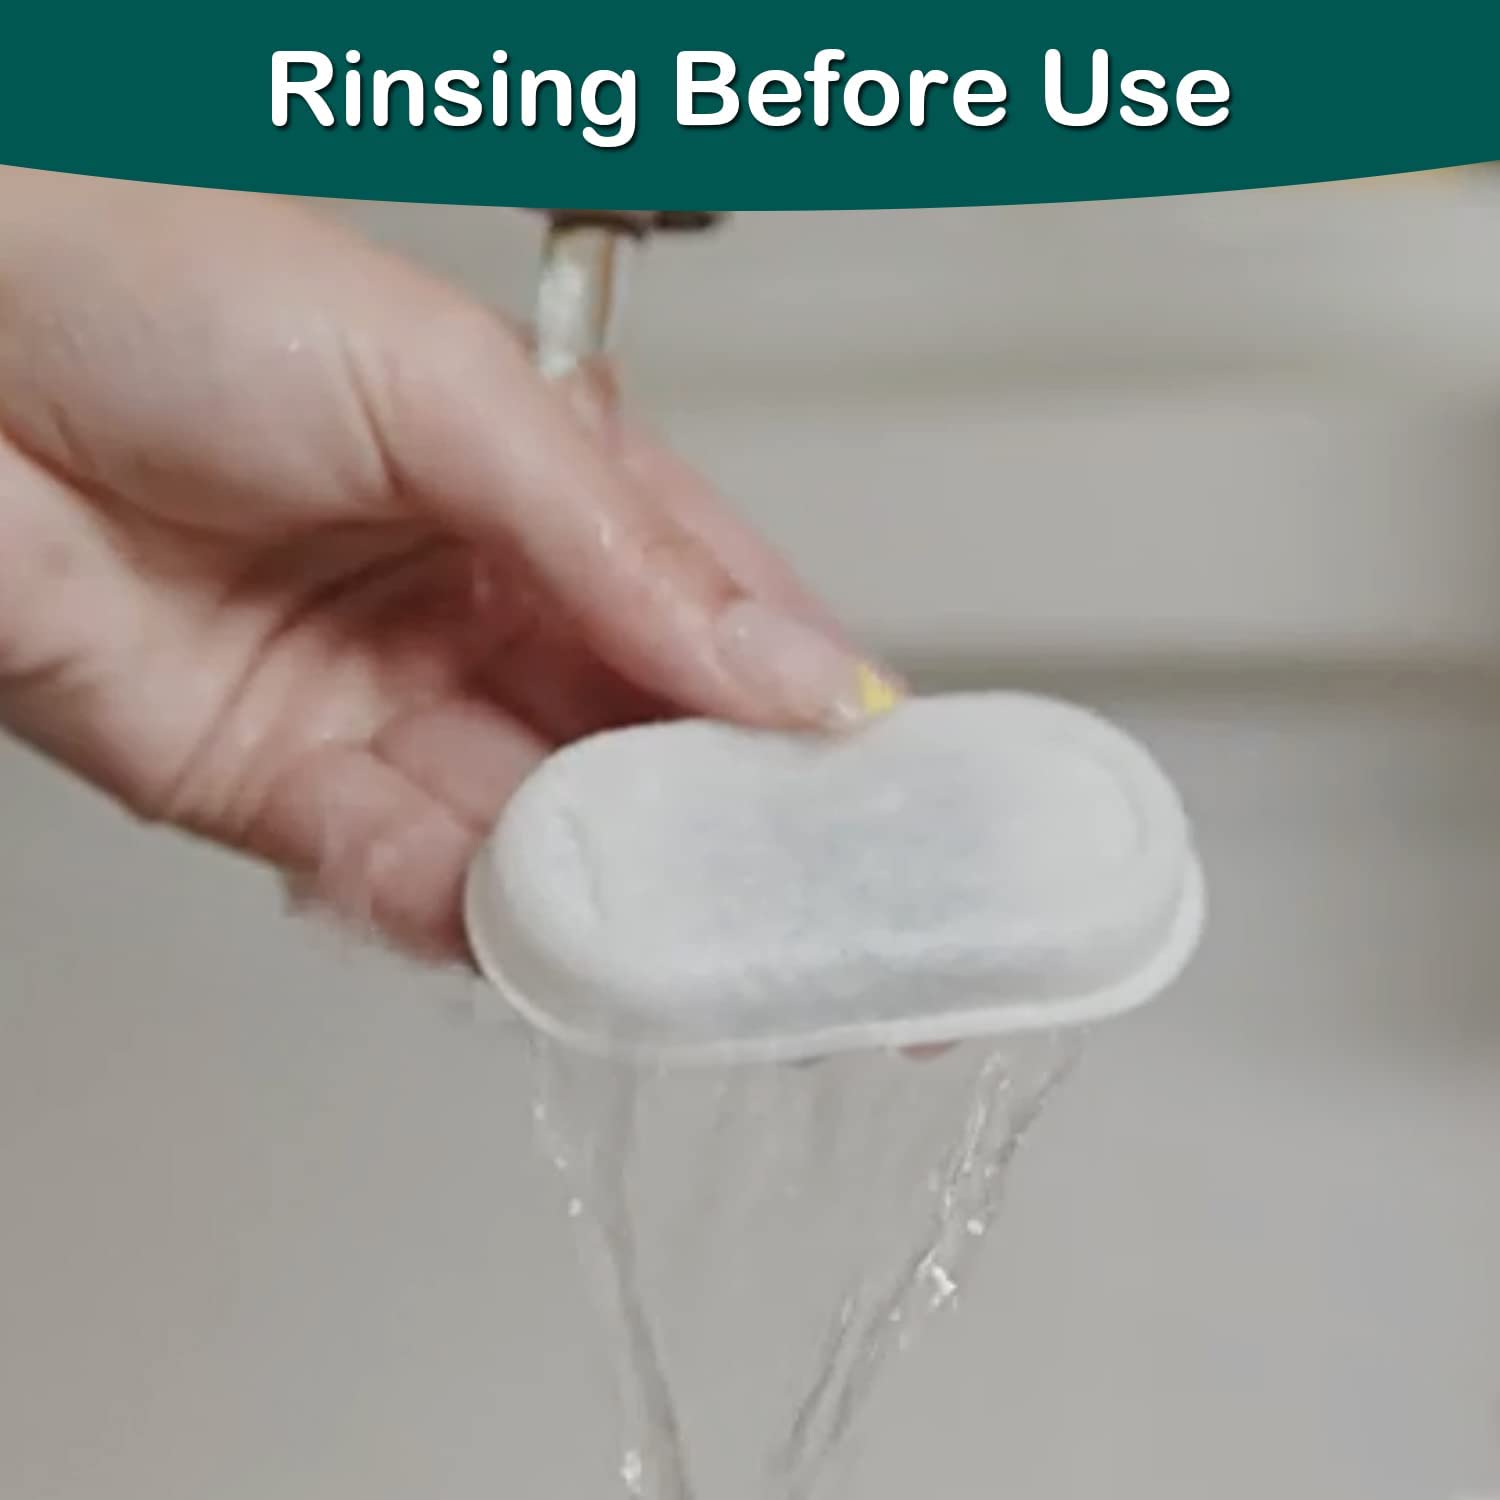 قبل از استفاده، فیلتر را خیس کنید و با آب تمیز بشویید